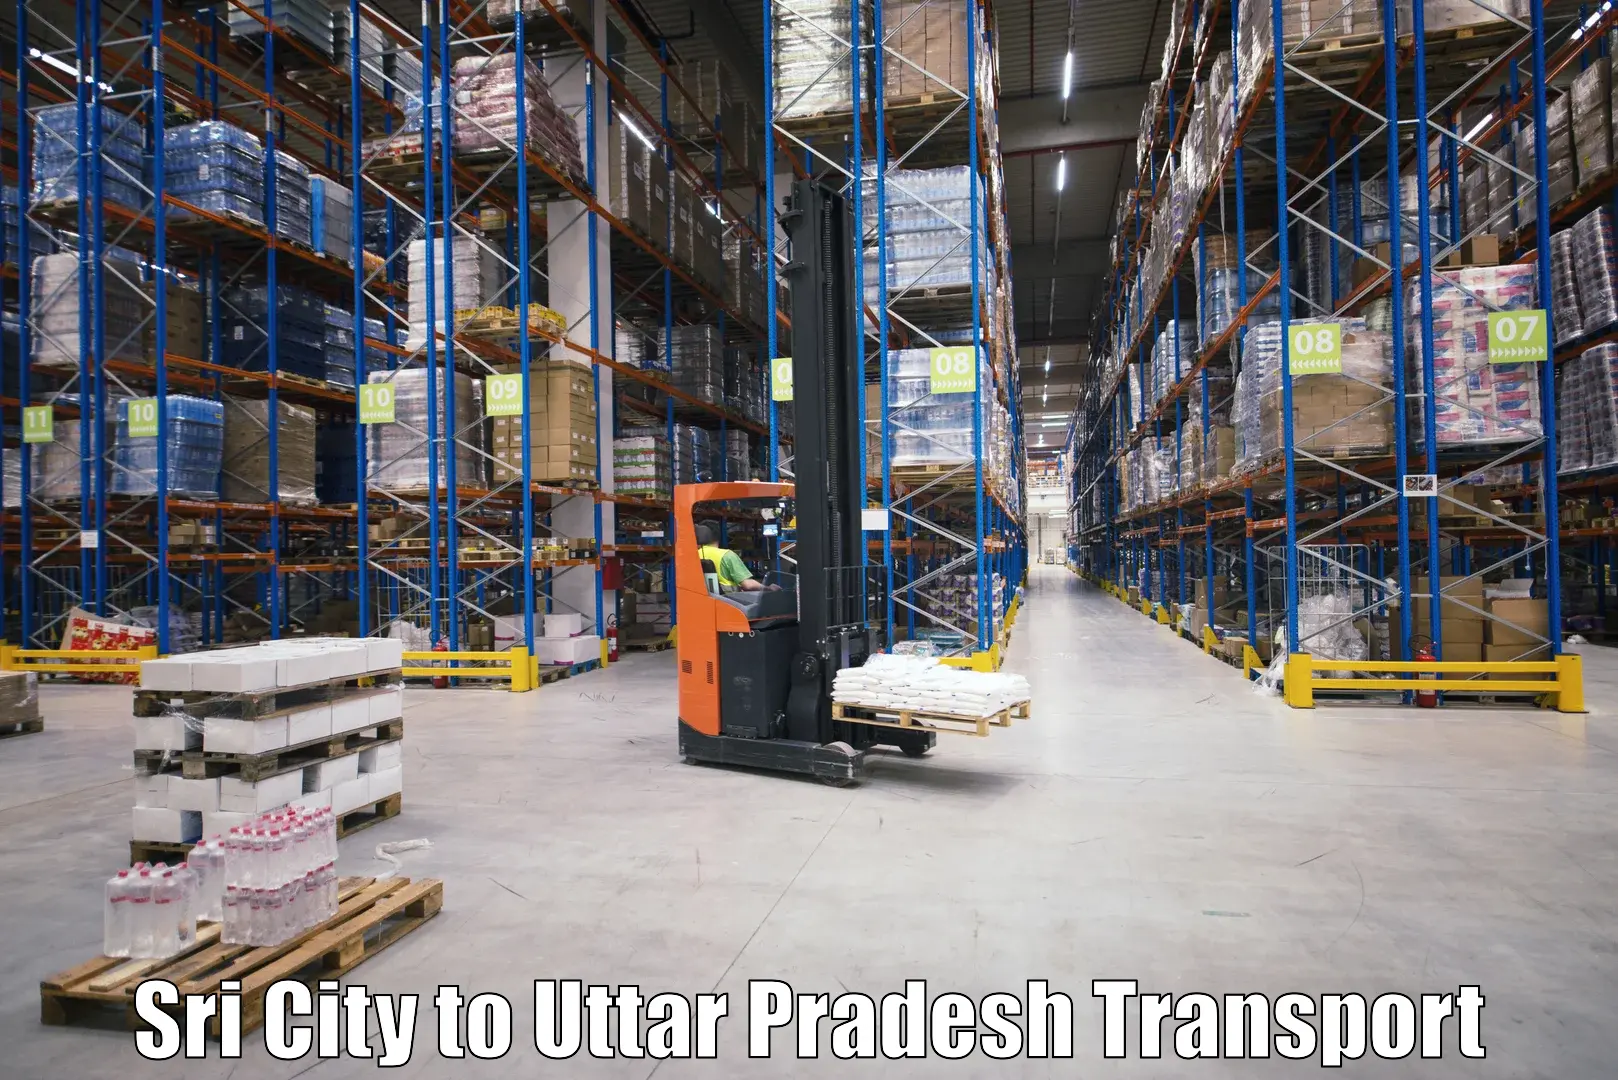 Transportation services Sri City to Varanasi